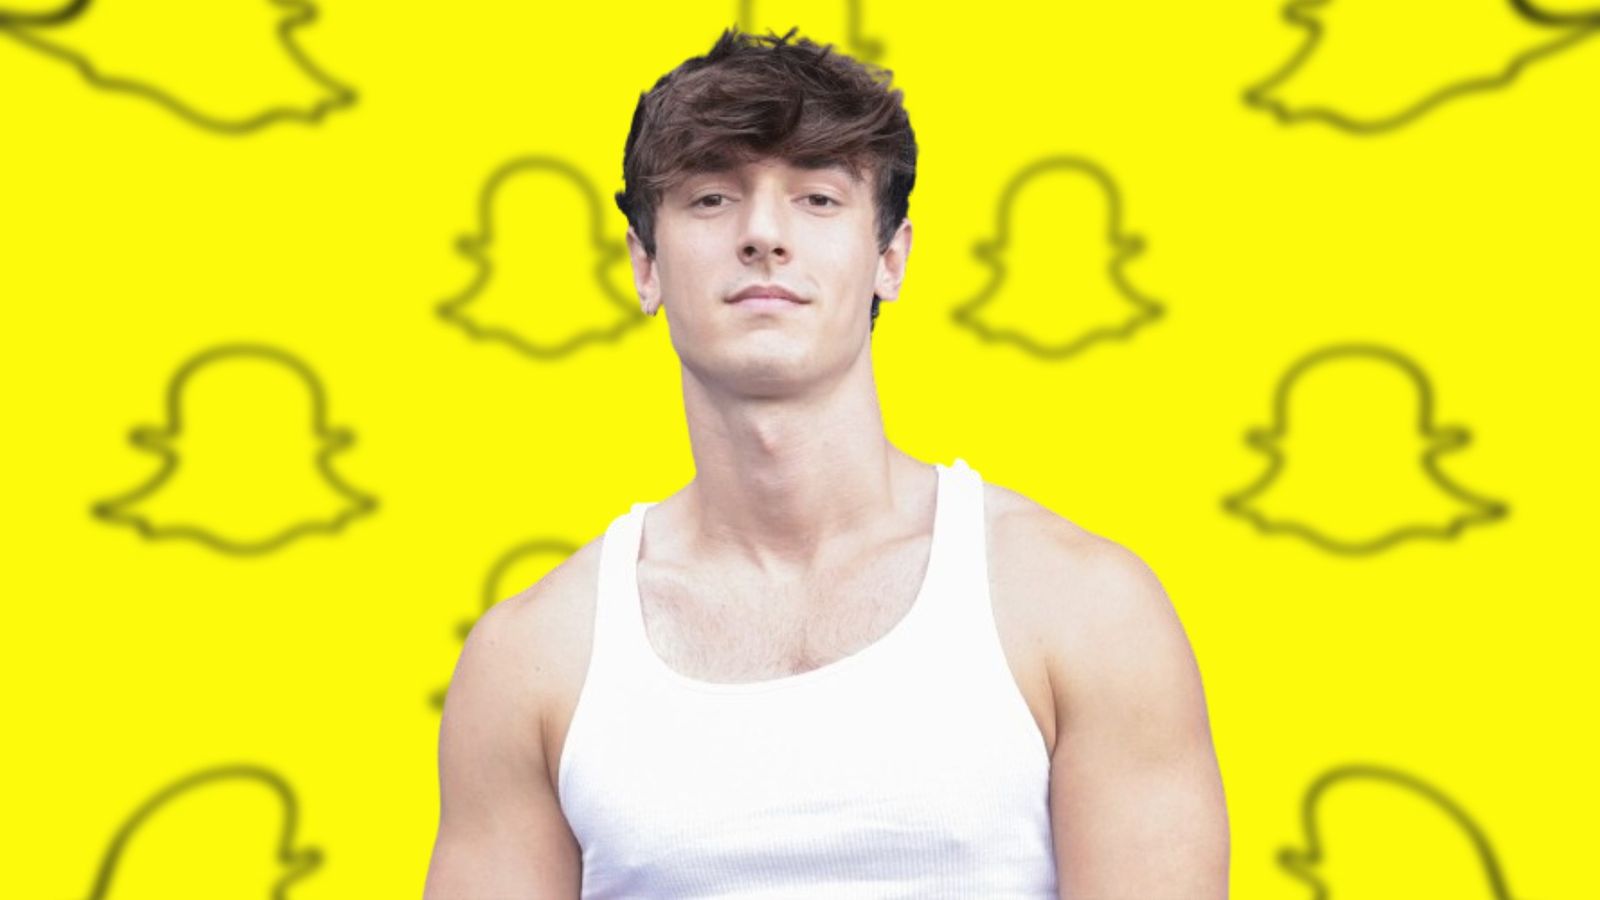 An image of Bryce Hall and Snapchat logos behind him